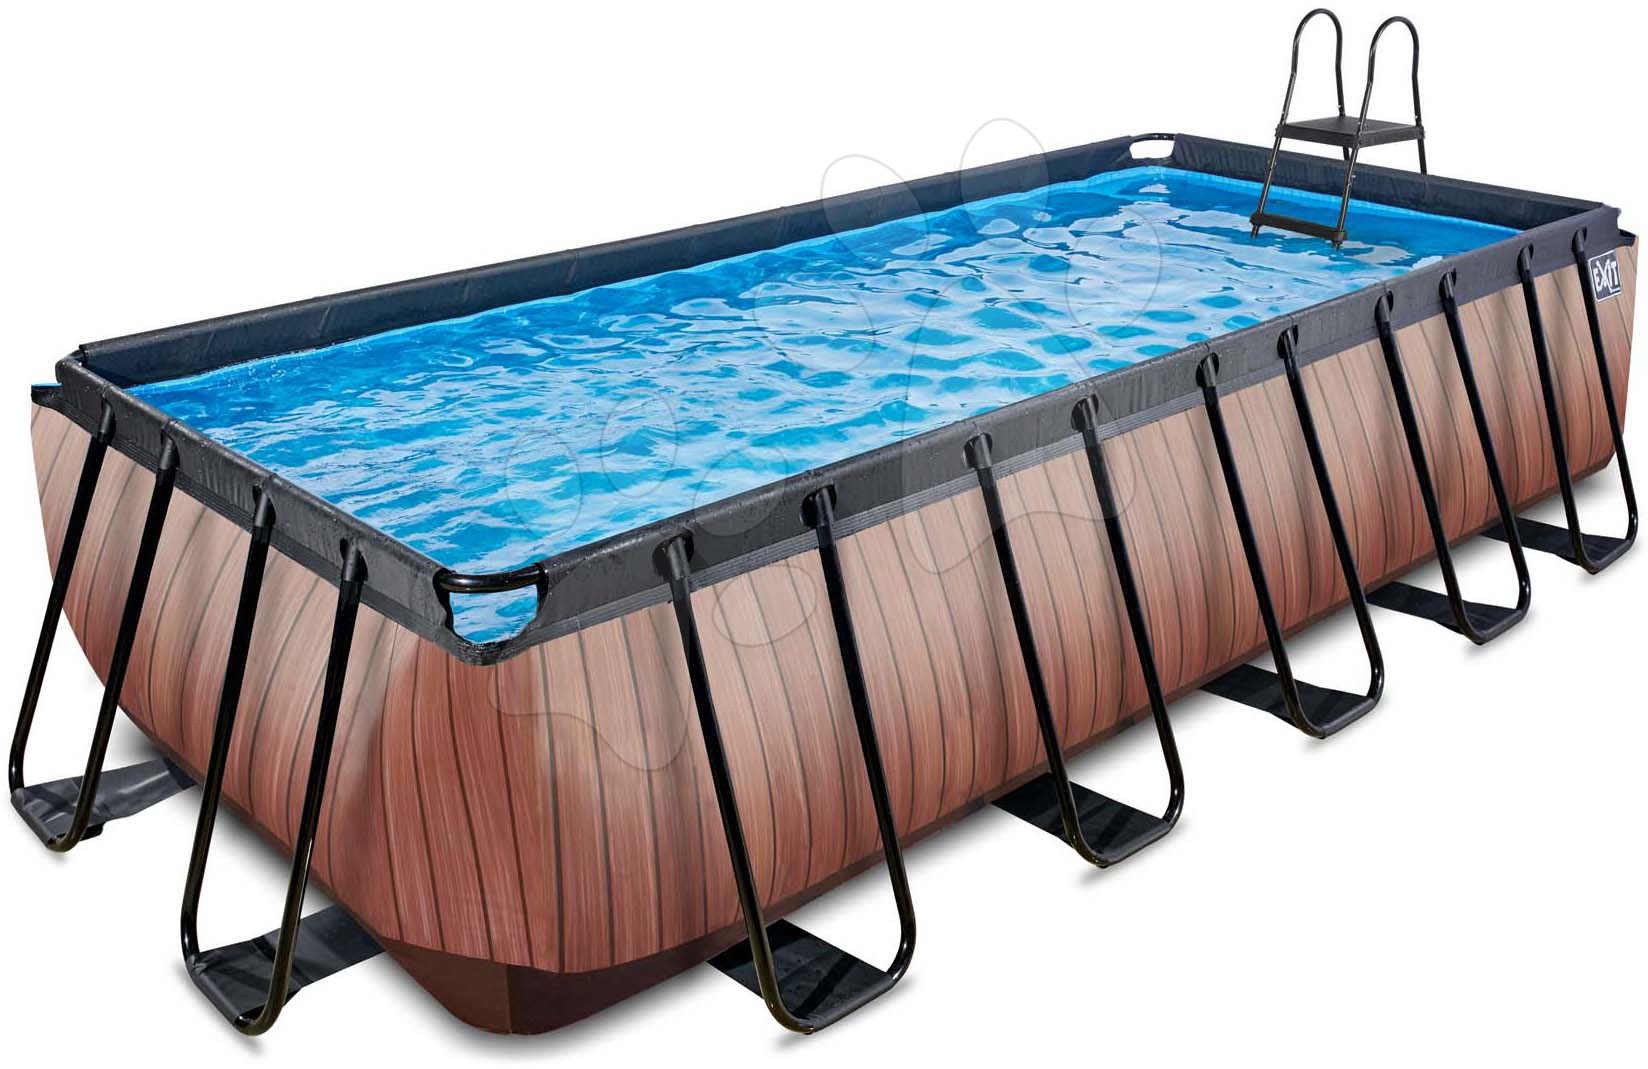 Bazén s filtráciou Wood pool brown Exit Toys oceľová konštrukcia 540*250*122 cm hnedý od 6 rokov